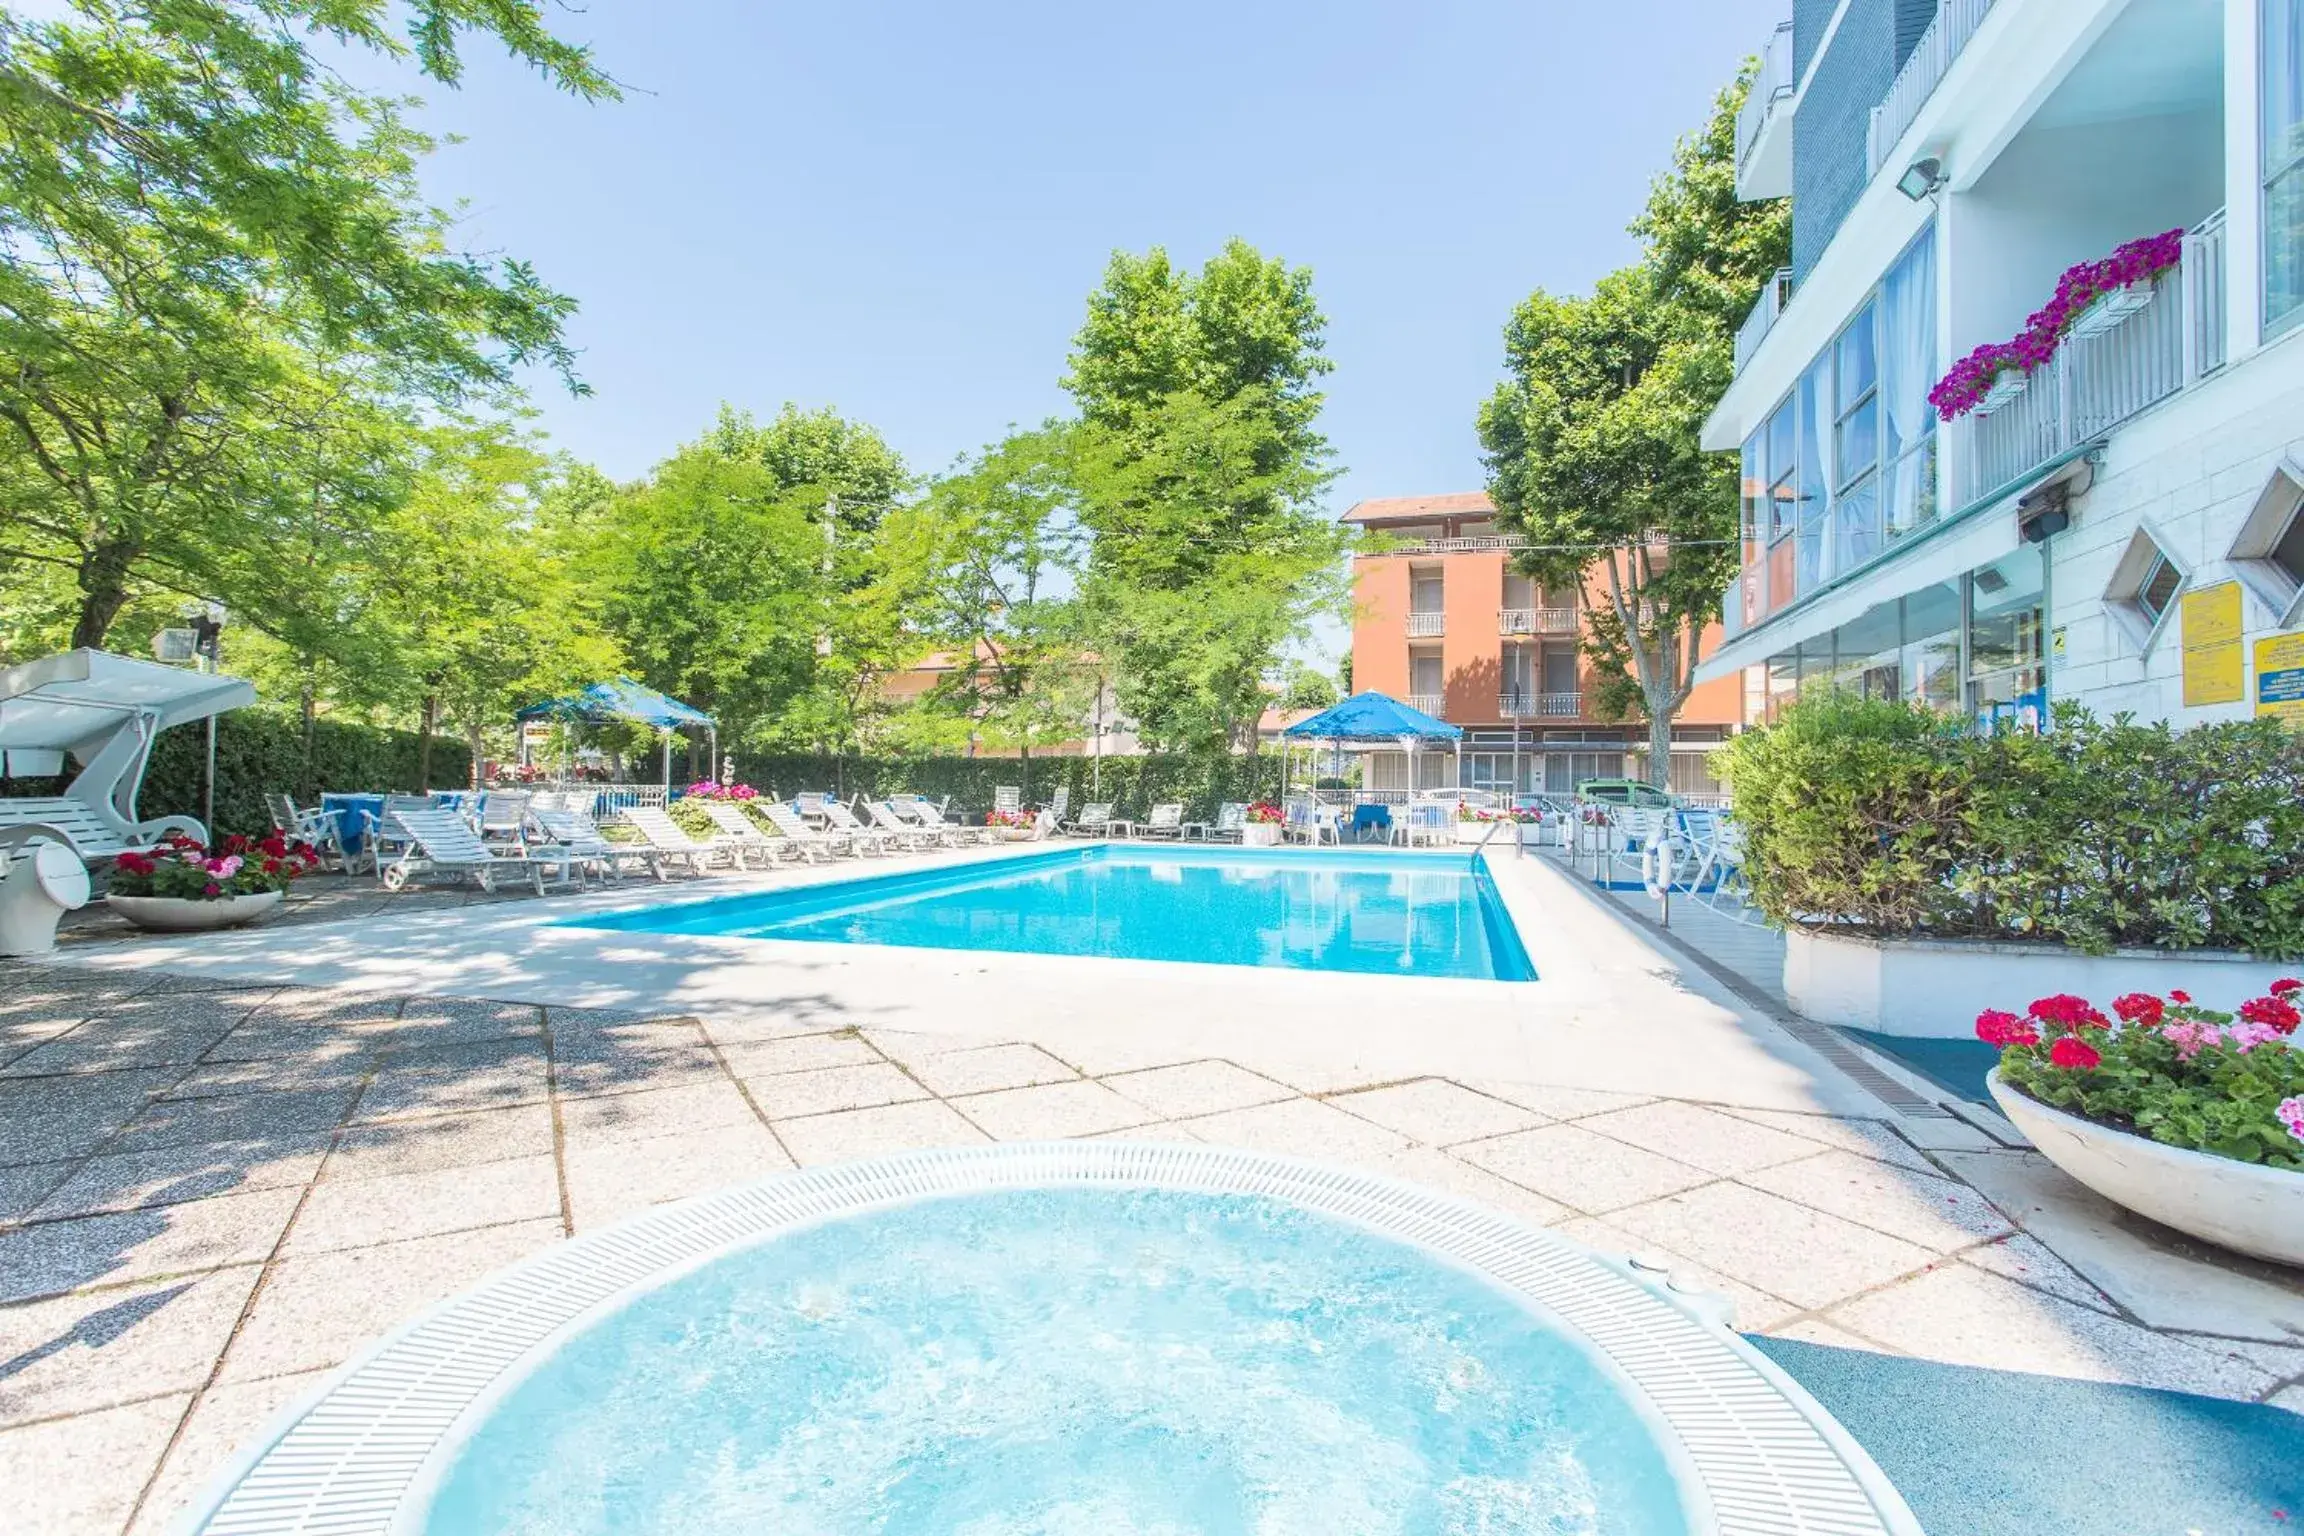 Swimming Pool in Hotel Gioiello